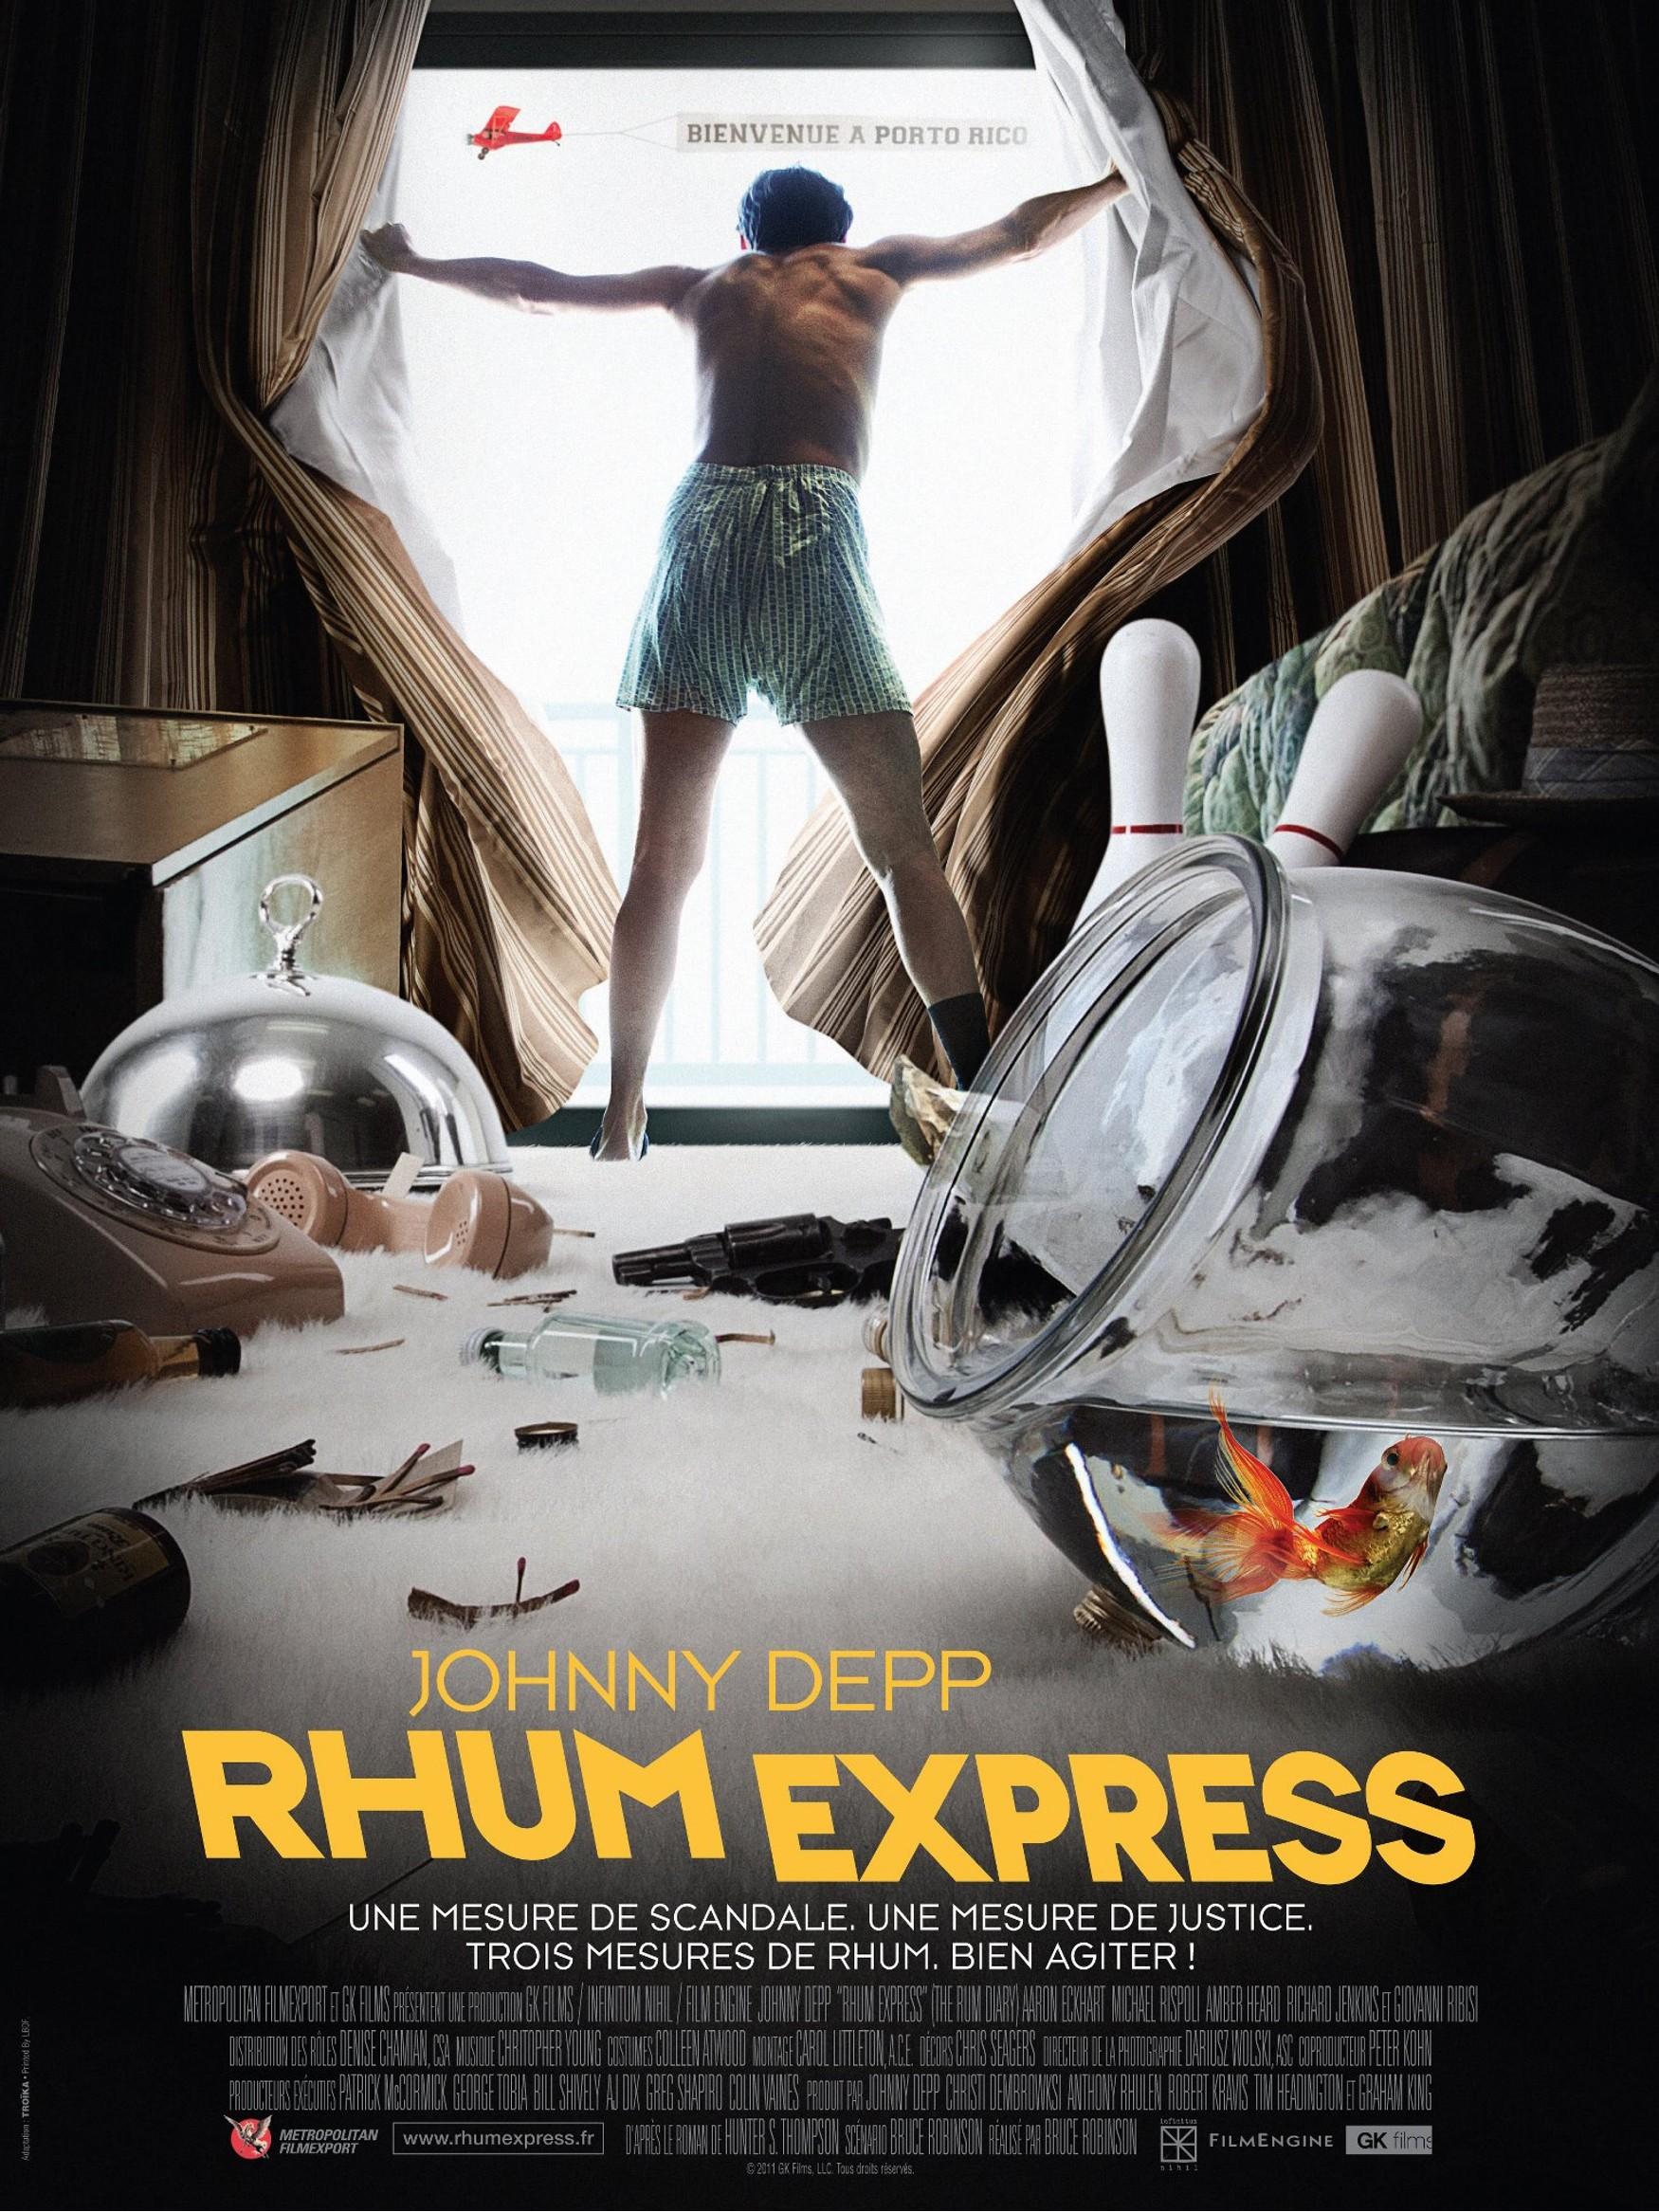 Постер фильма Ромовый дневник | Rum Diary